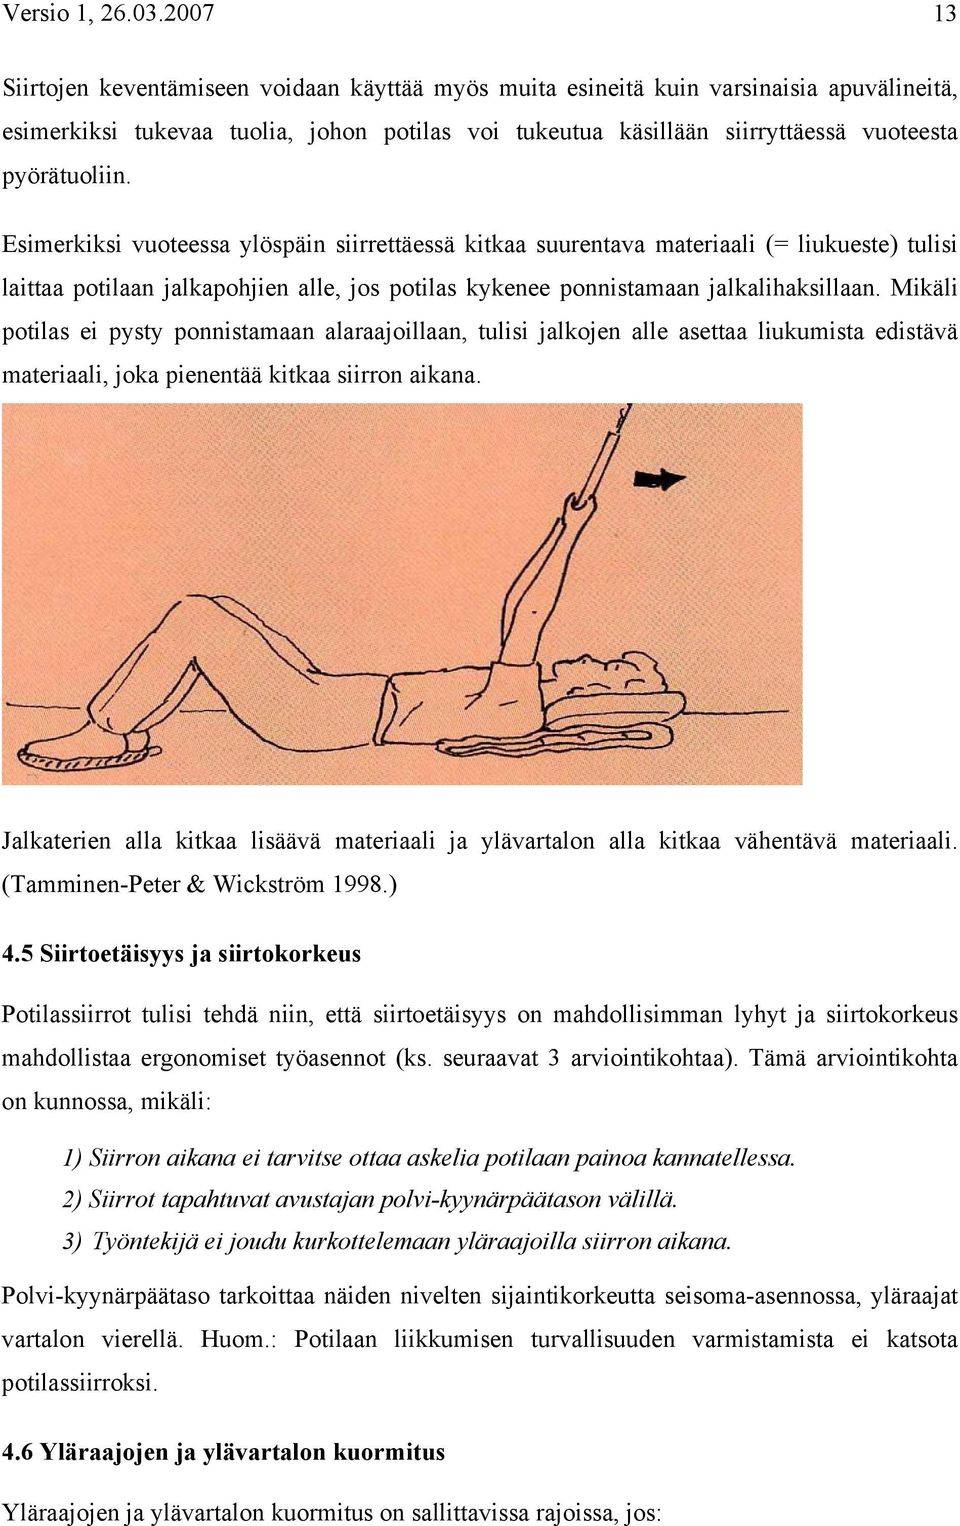 pyörätuoliin. Esimerkiksi vuoteessa ylöspäin siirrettäessä kitkaa suurentava materiaali (= liukueste) tulisi laittaa potilaan jalkapohjien alle, jos potilas kykenee ponnistamaan jalkalihaksillaan.